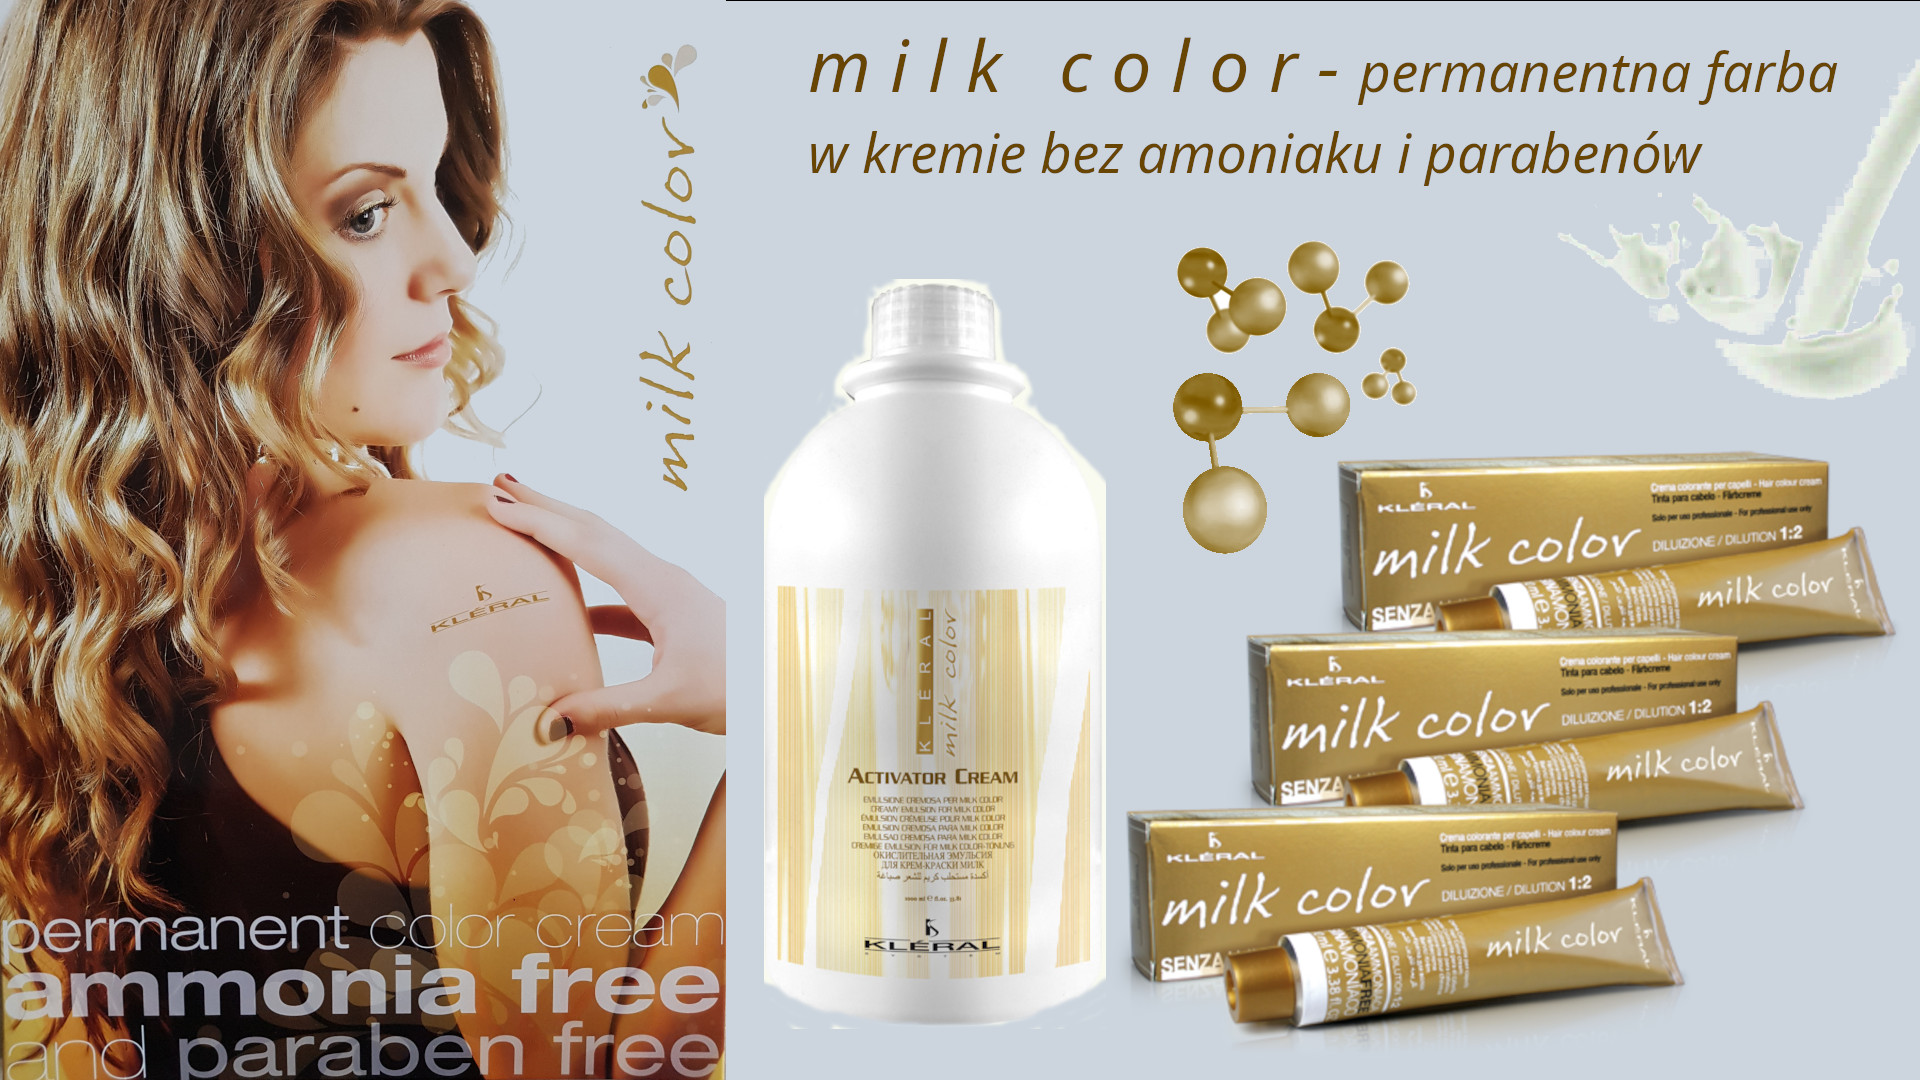 milk color - permanentna farba w kremie bez amoniaku i parabenów